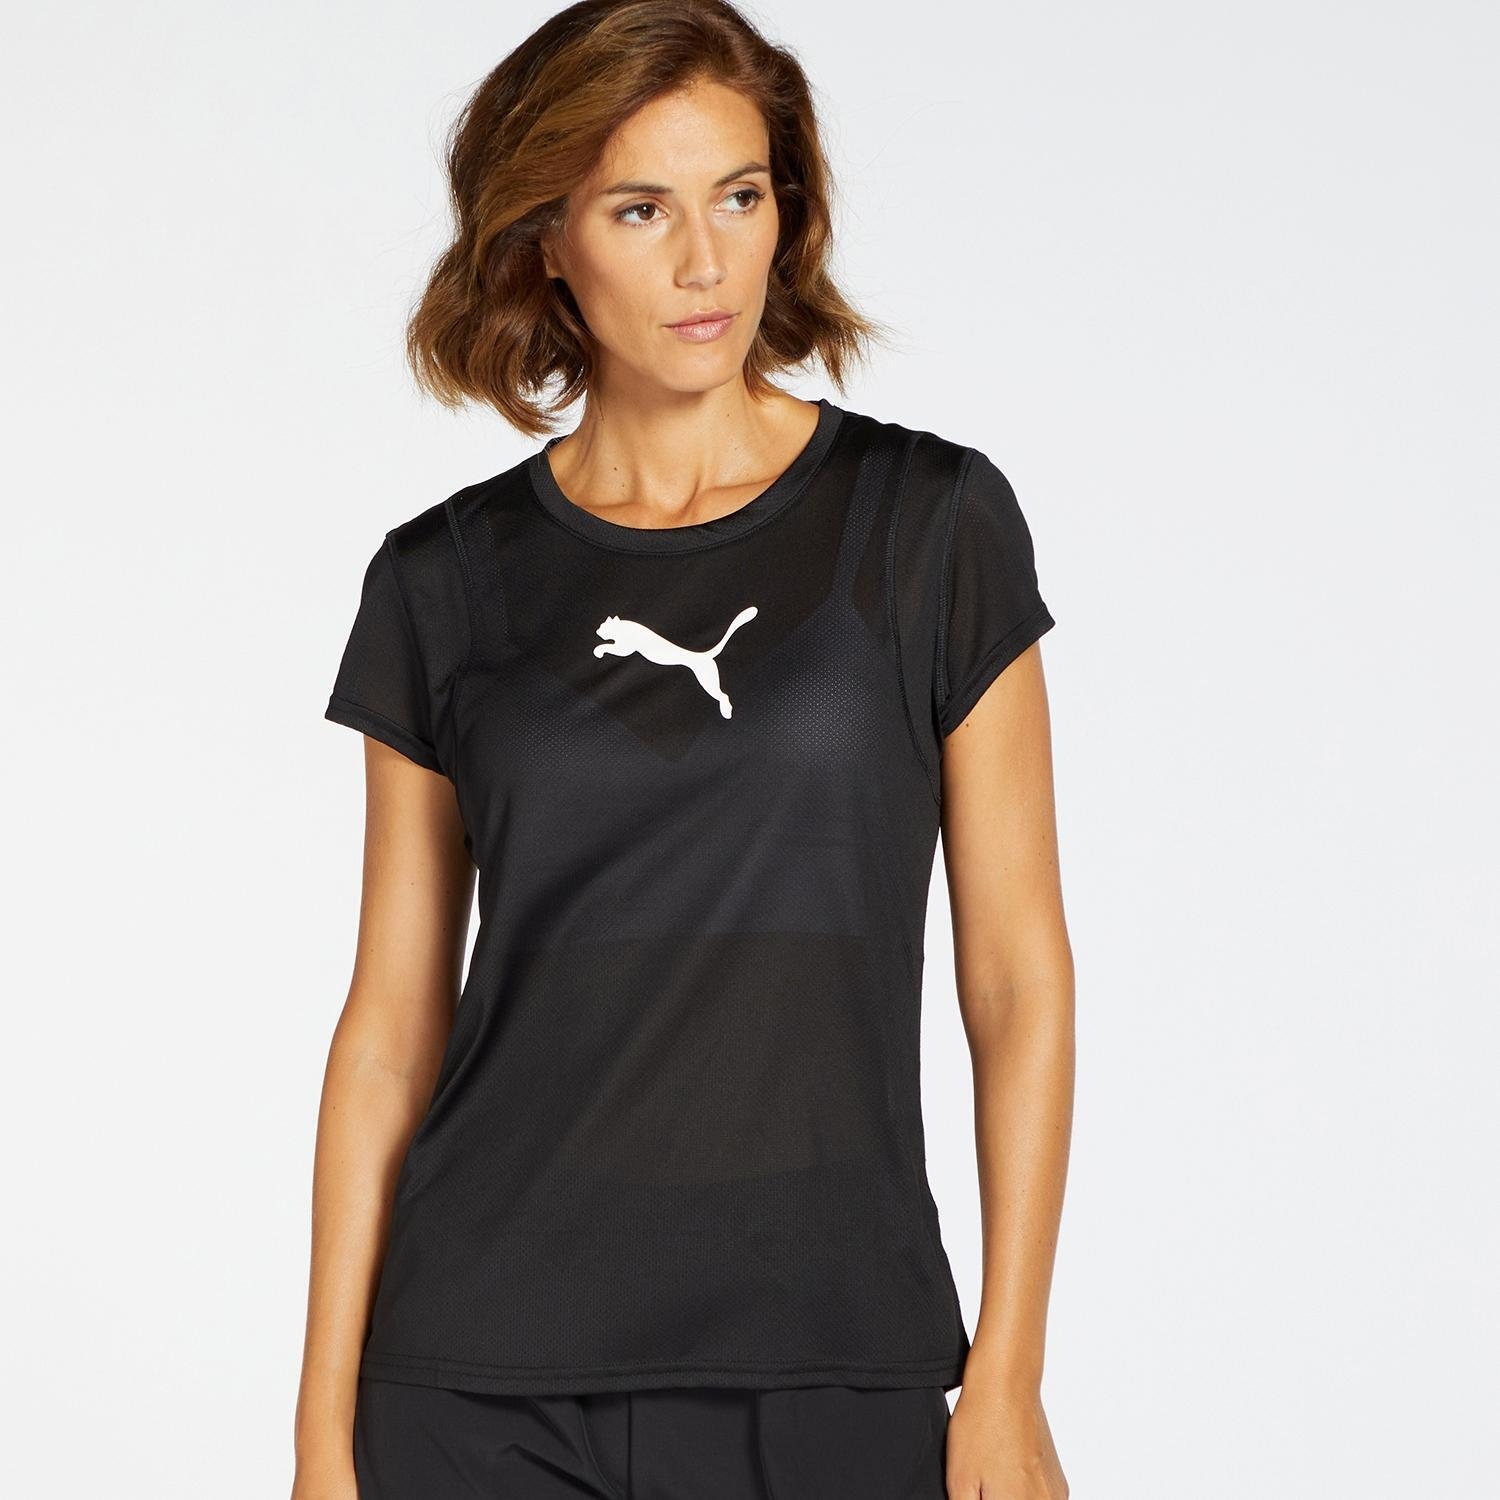 Puma Train All Day dames sport T-shirt - Zwart - Maat XL